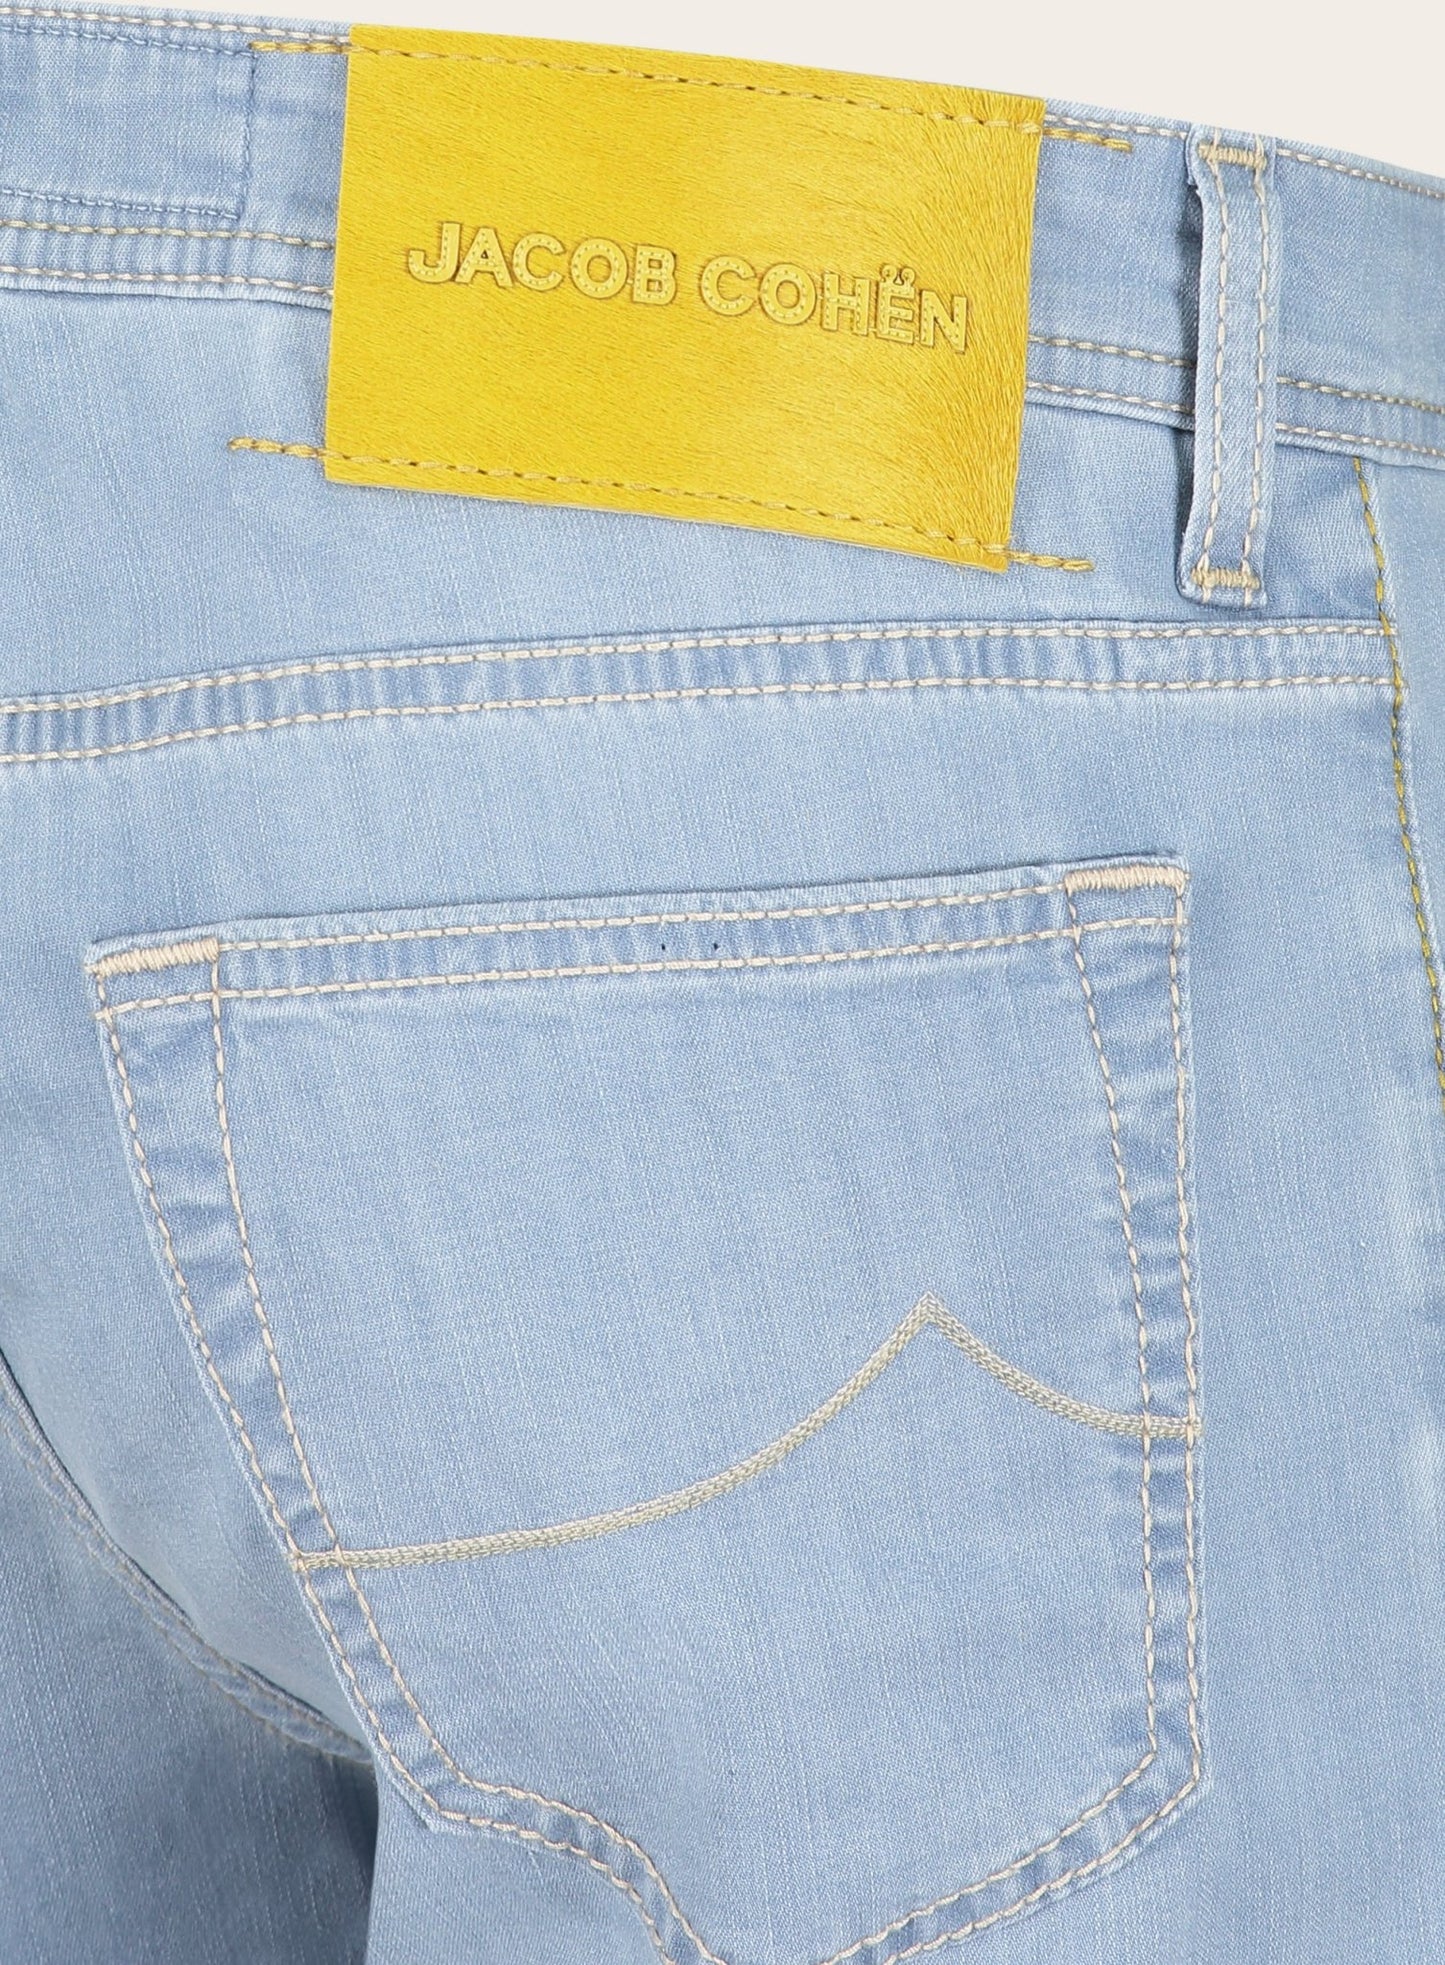 Slim-fit bard jeans | L.Blauw